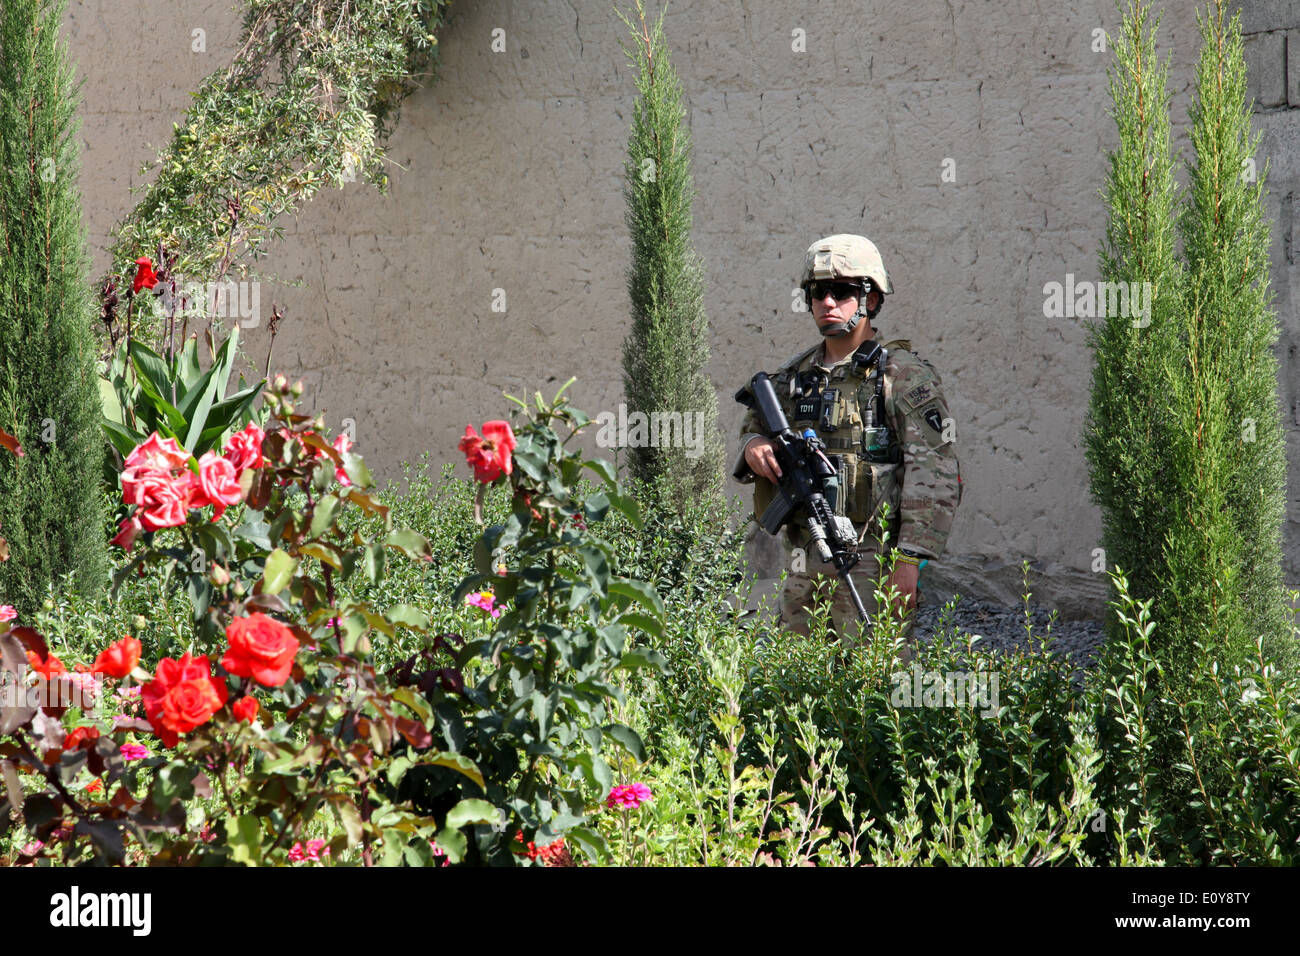 Un soldado Aerotransportada del ejército de los Estados Unidos mantiene vigilancia durante una visita a una aldea agrícola, el 27 de septiembre de 2012 en el distrito de Nadir Shah Kot, la provincia de Khost, en Afganistán. Foto de stock